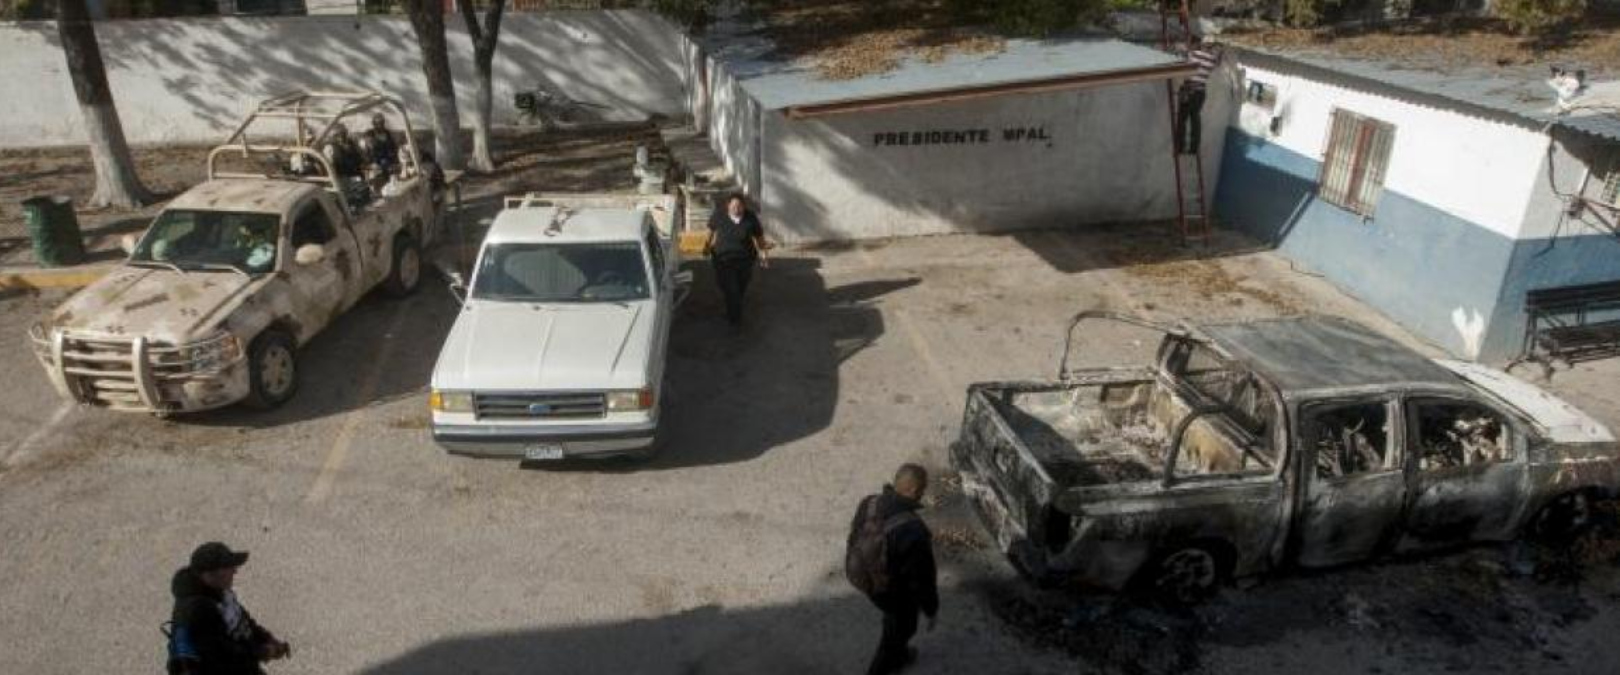 Fuerzas de seguridad de México estaban centrados este lunes en la búsqueda de decenas...